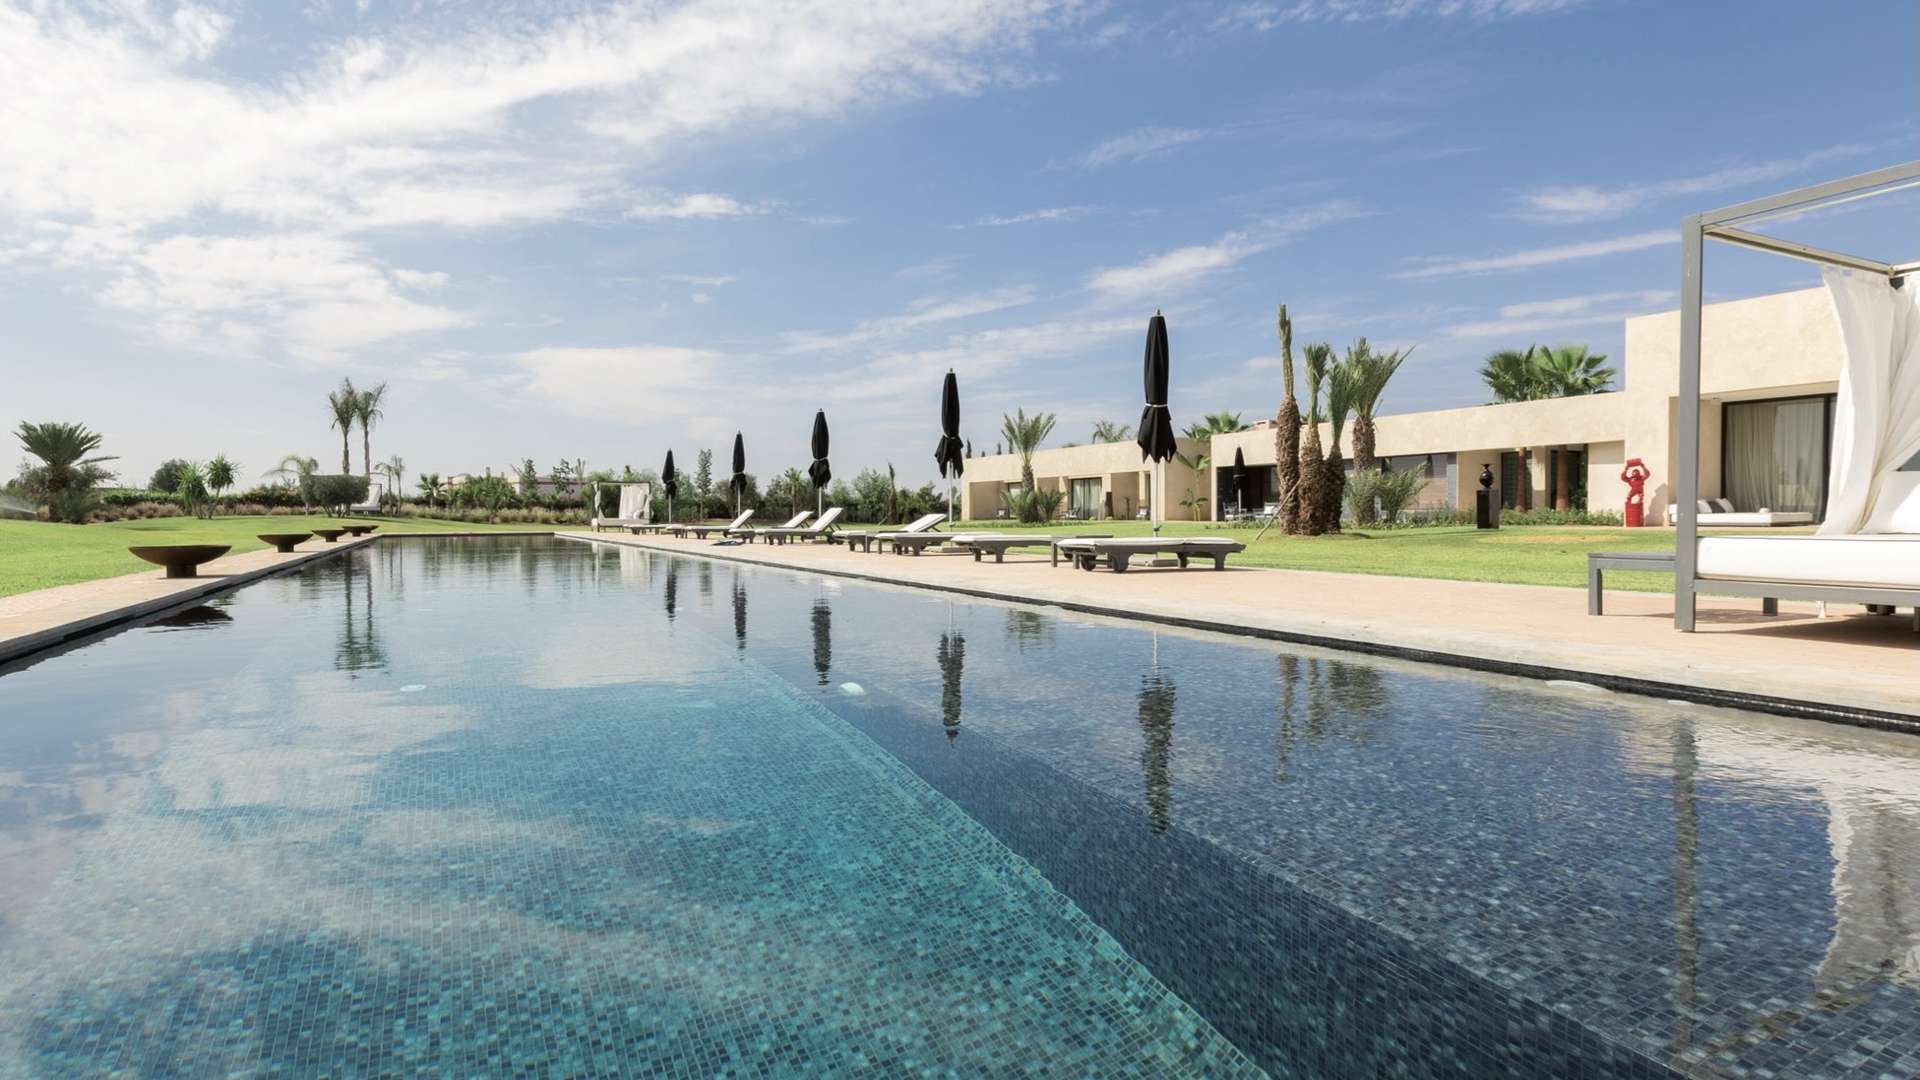 Vente,Villa,Splendide propriété de luxe implantée sur un parc de 3,5 Ha à proximité des 3 golfs de Marrakech,Marrakech,Route d'Ouarzazate